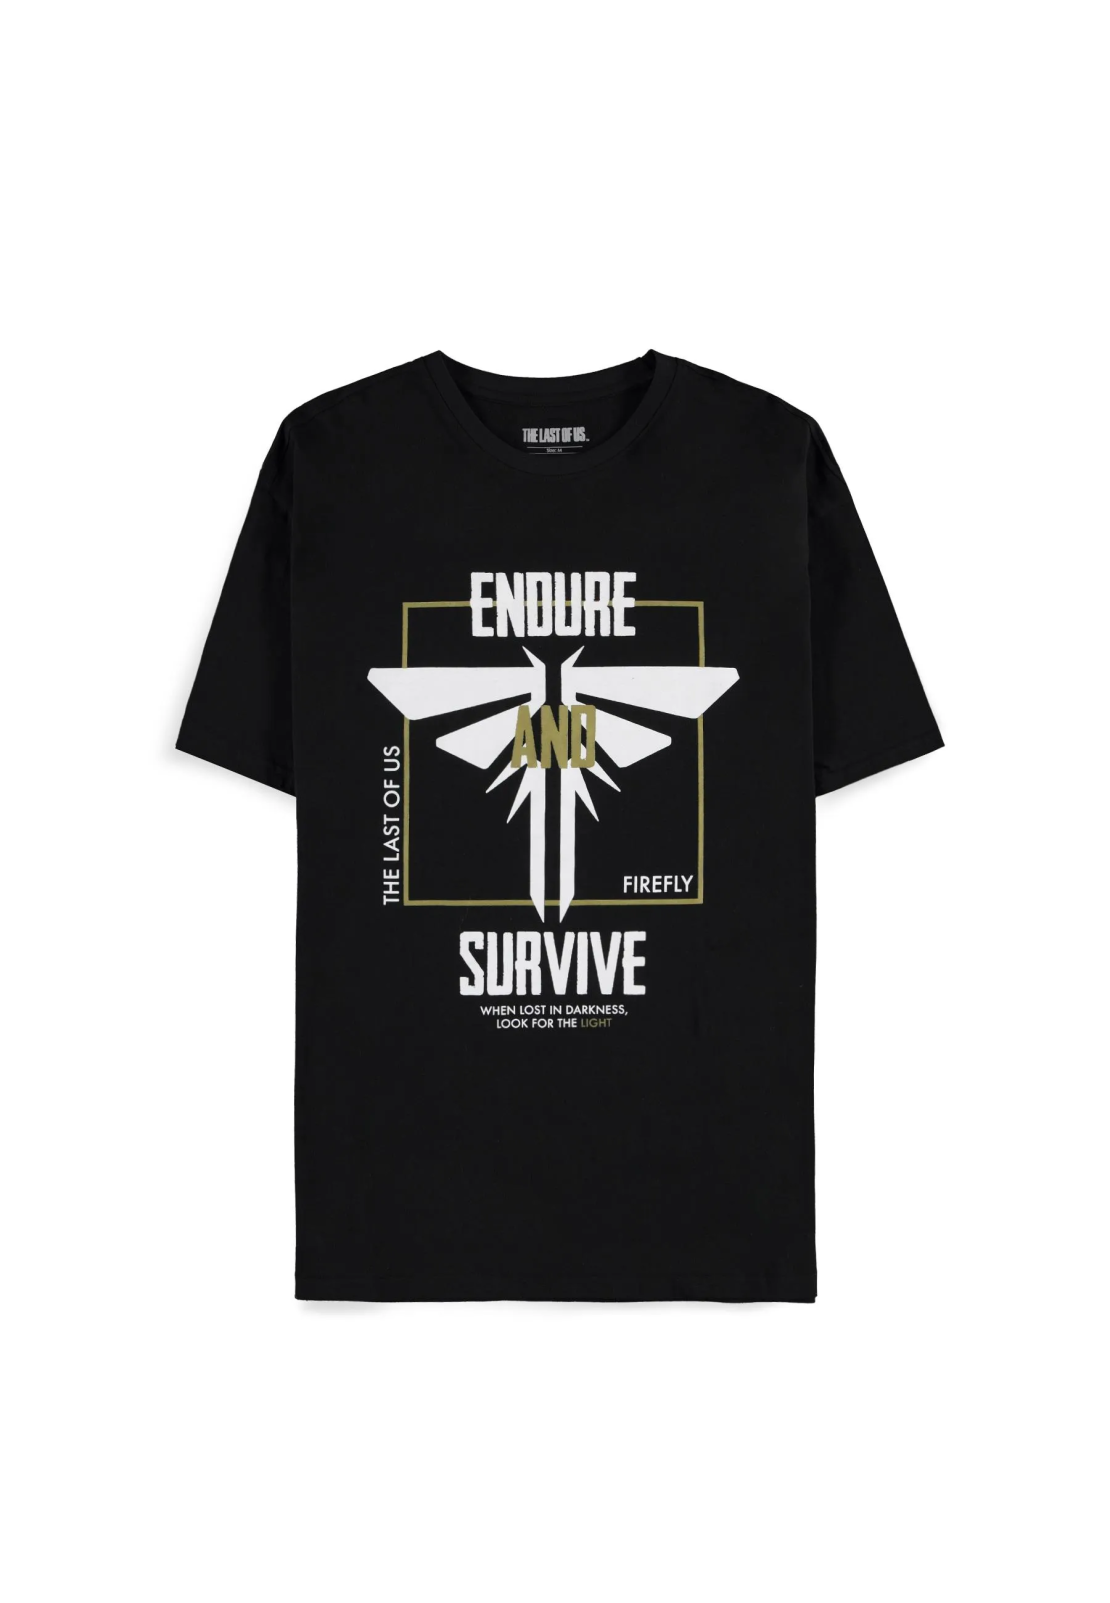 חולצת האחרונים מבינינו - לוגו פיירפליי Endure and Survive